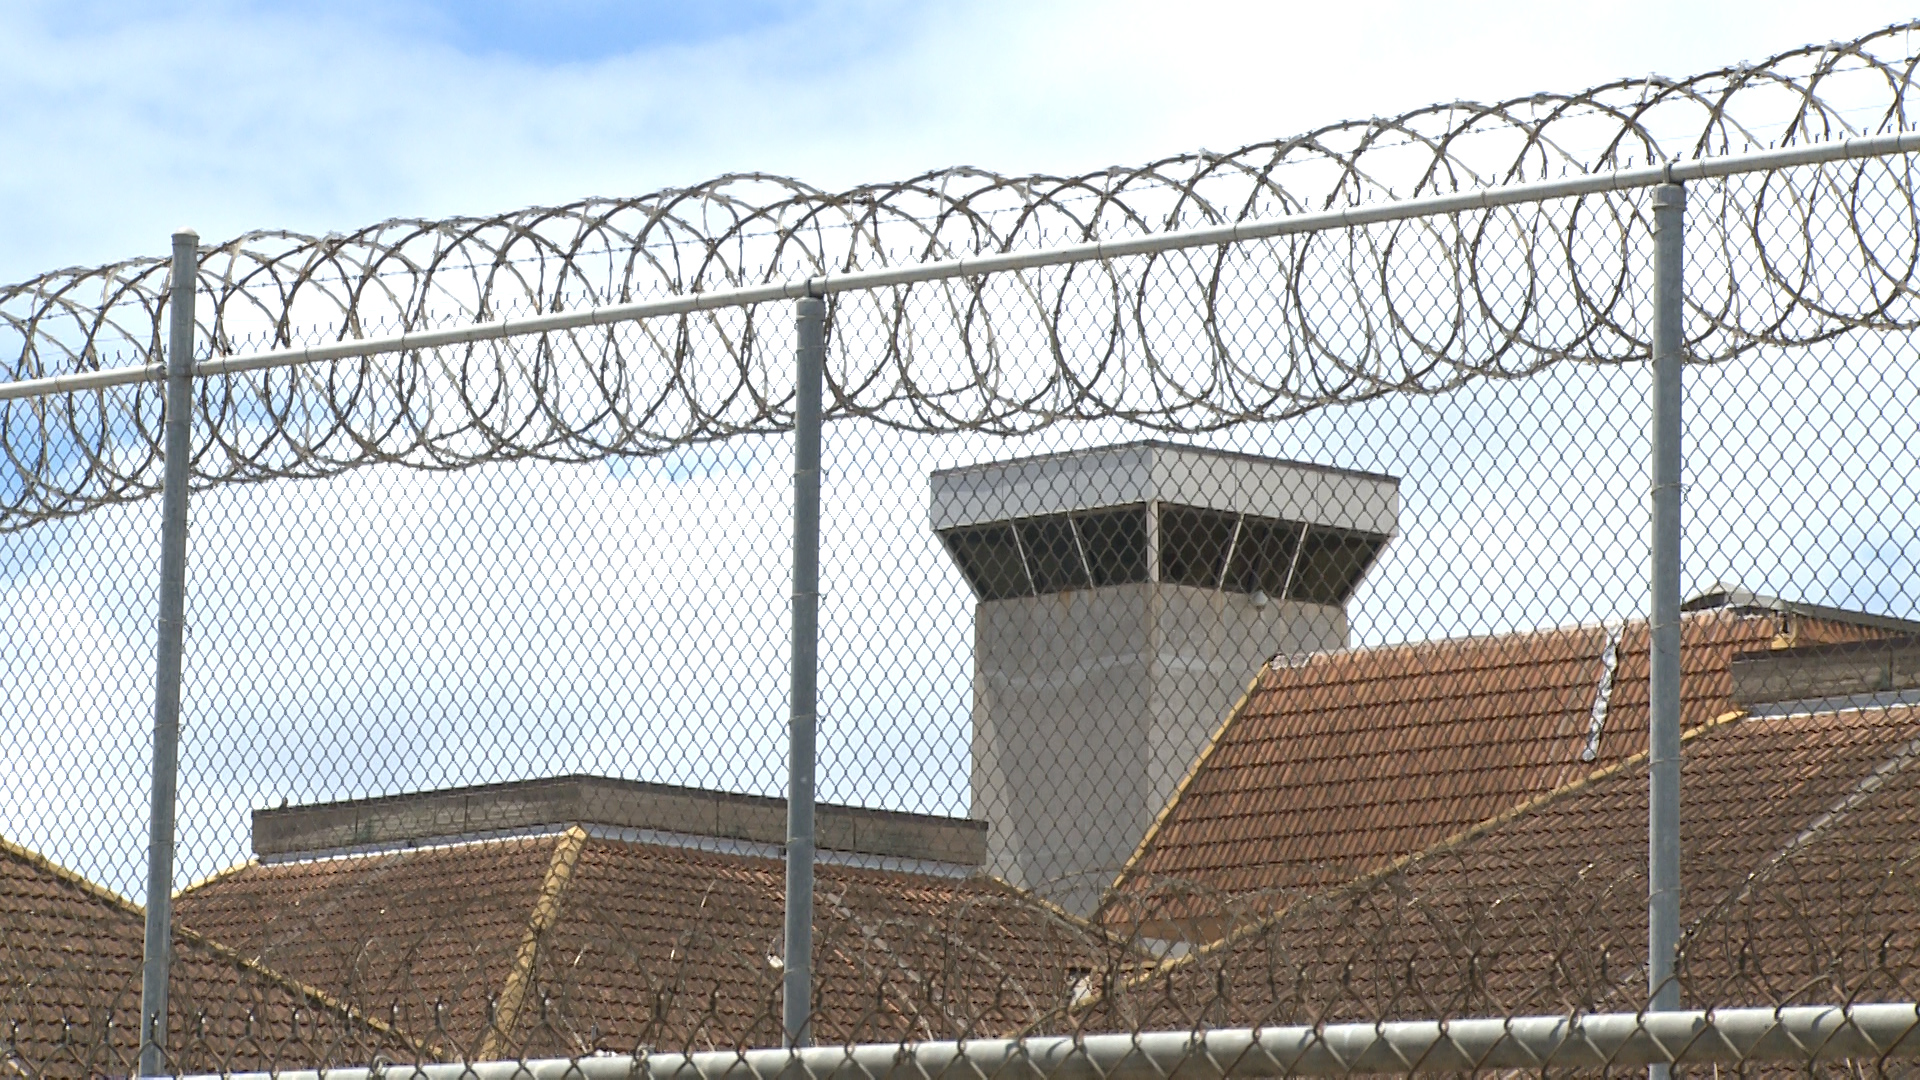 Should Oʻahu Build a New Jail?